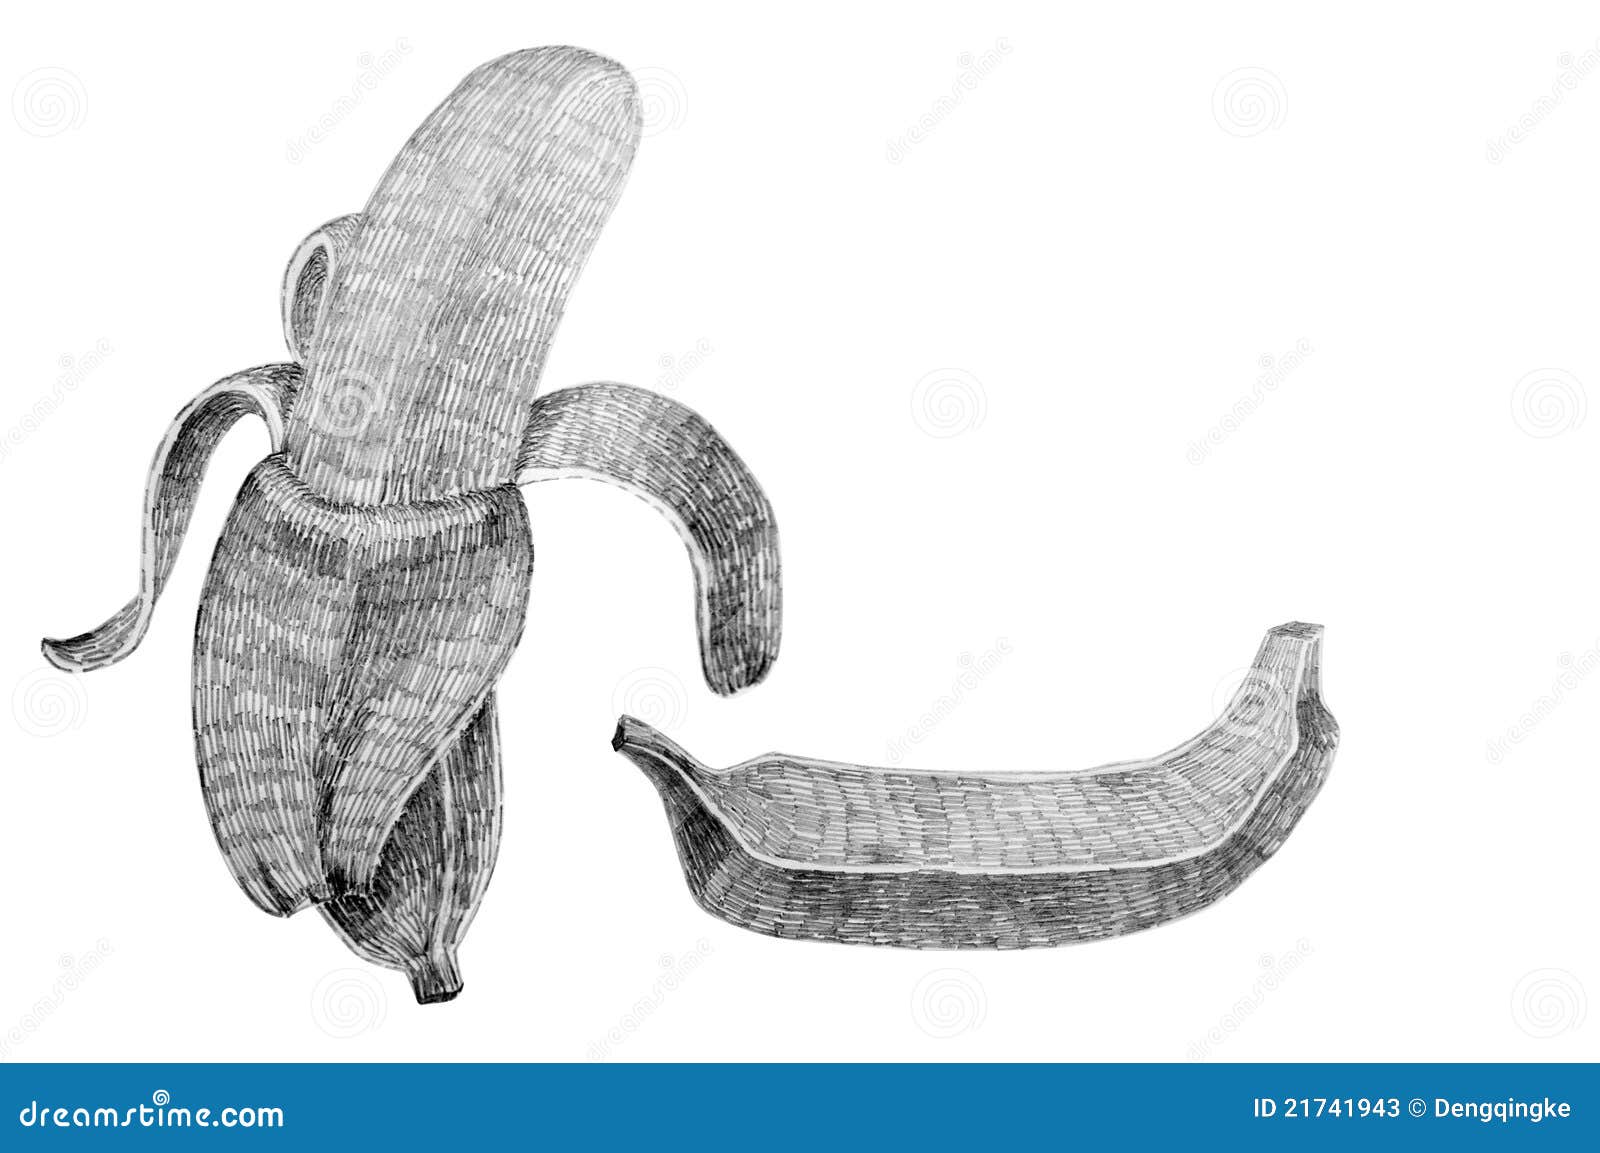 Banana stock illustration. Illustration of care, freshness - 21741943